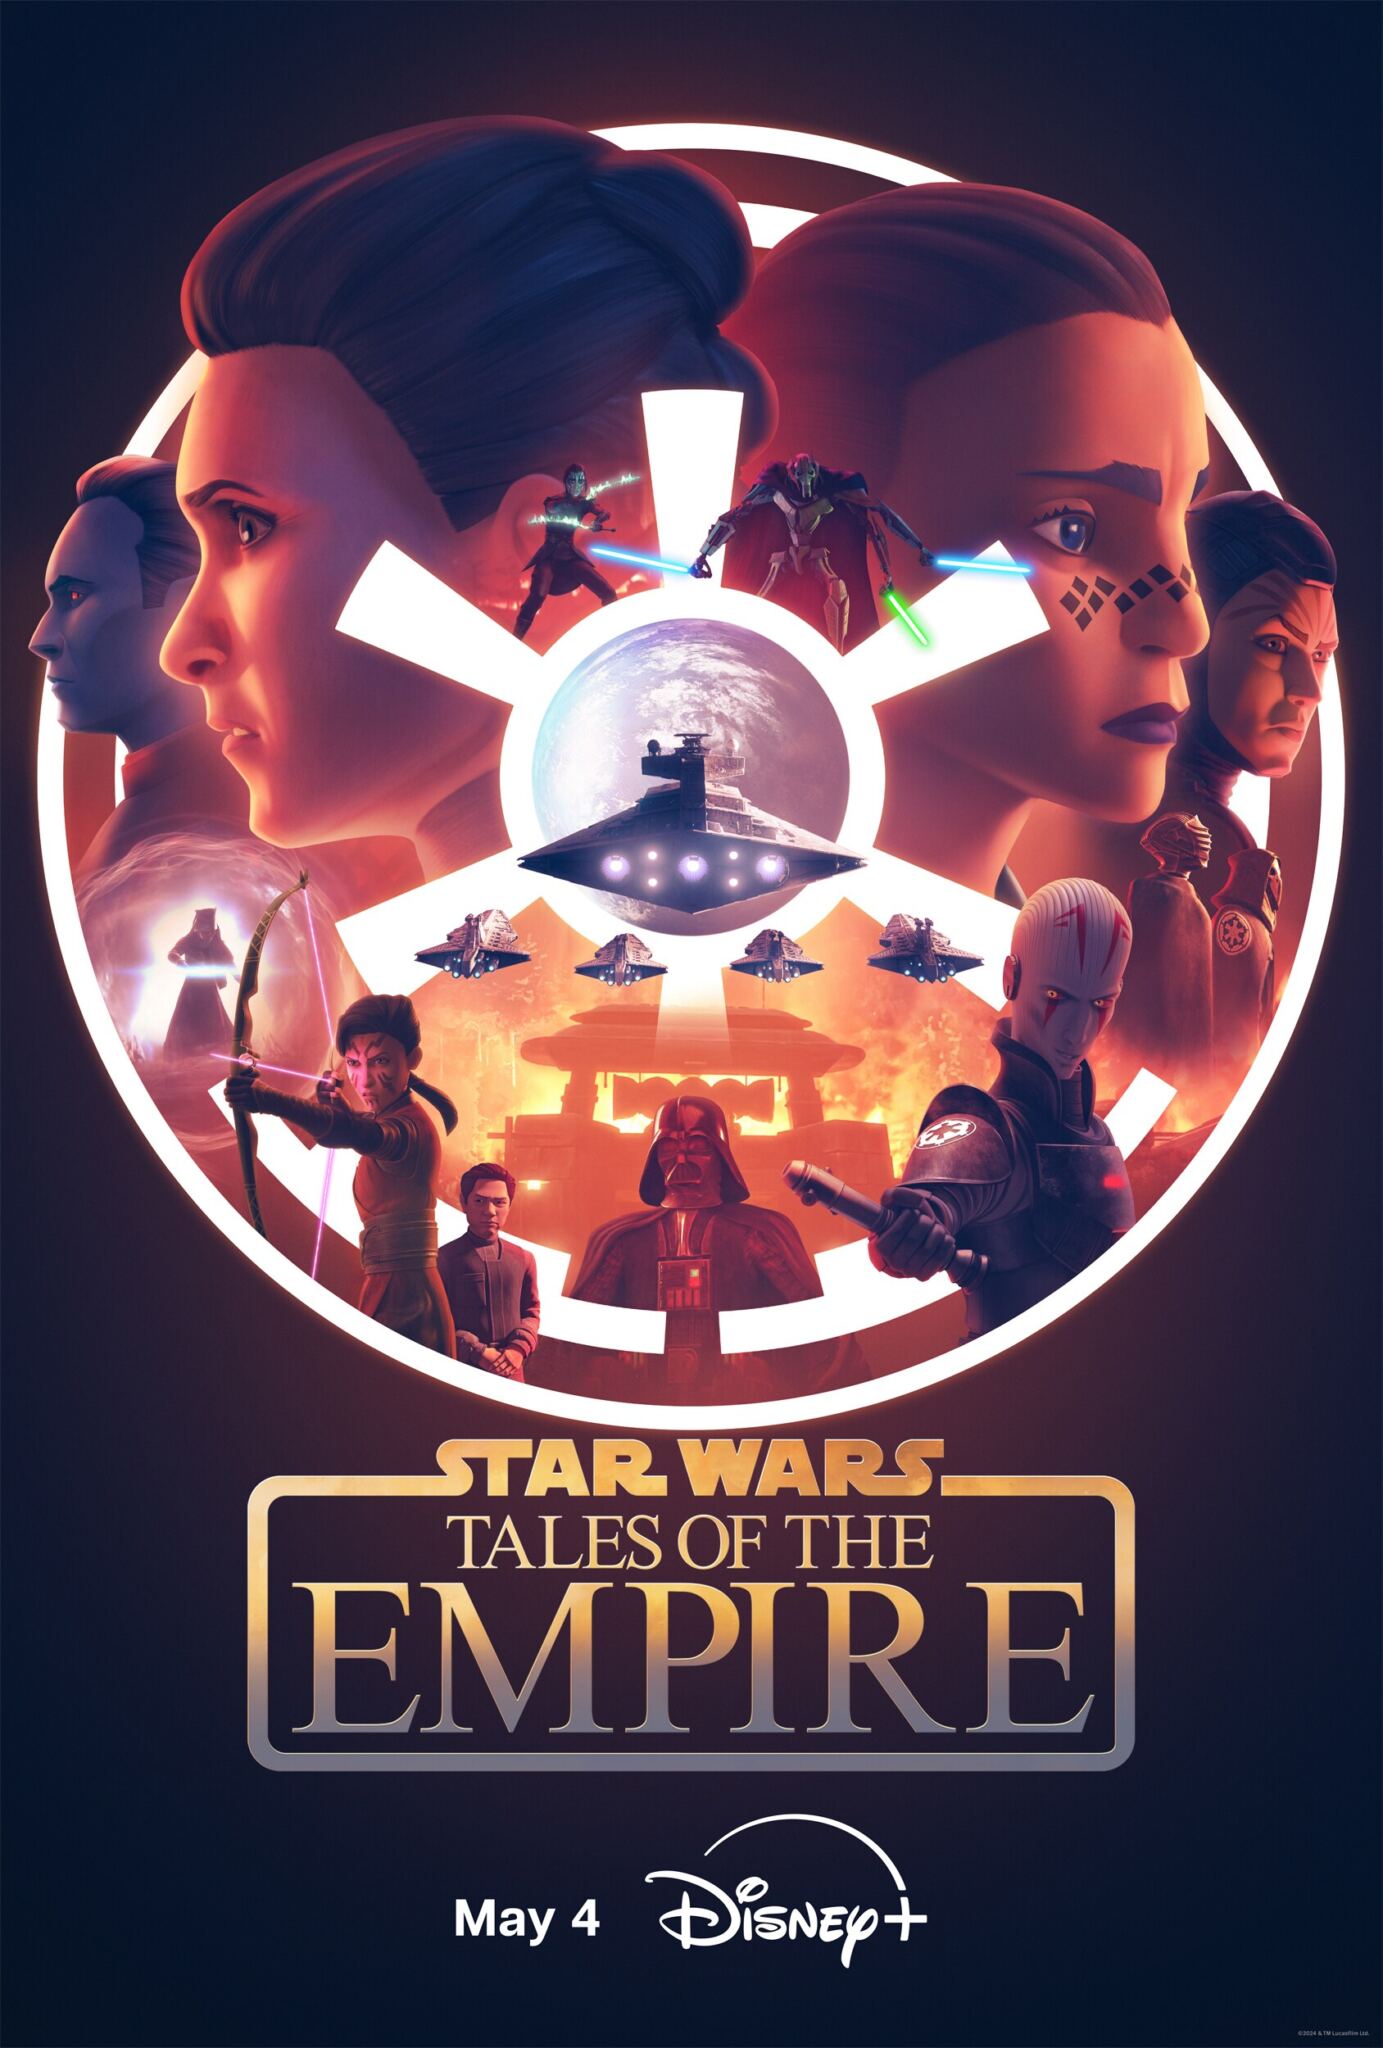 Affiche promotionnelle pour "Star Wars : Les Contes de l'Empire" présentant des personnages et des vaisseaux clés, avec une date de sortie le 4 mai sur Disney+.